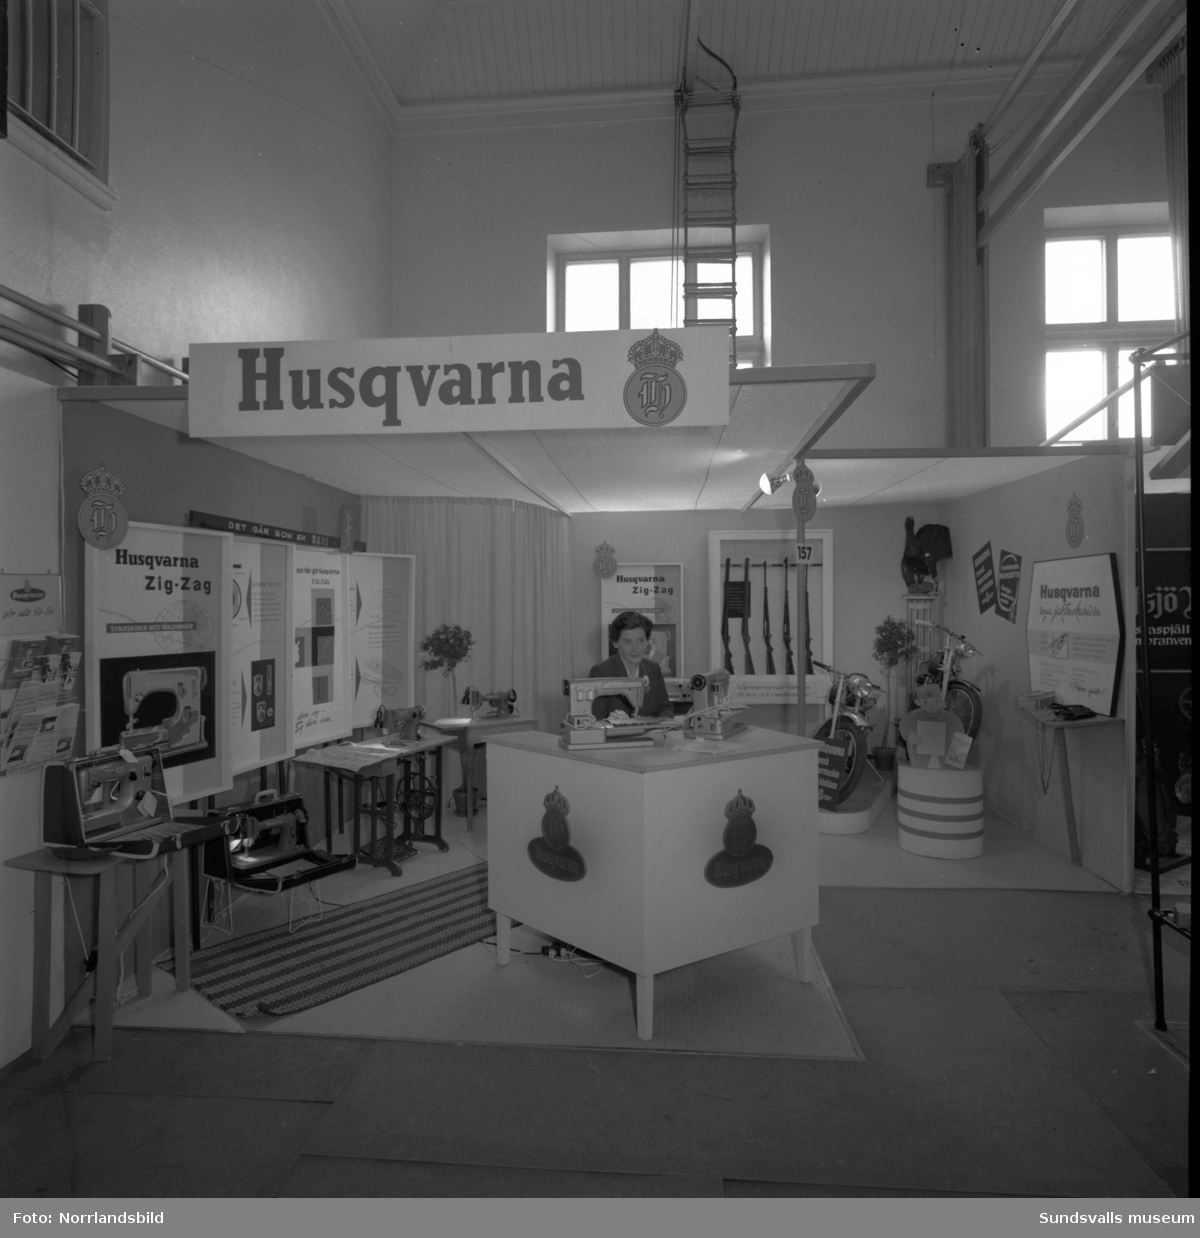 Husqvarnas monter i Läroverkets gymnastiksal på Sundsvallsmässan 1955.  Bland annat visas mopeder, vapen och symaskiner.